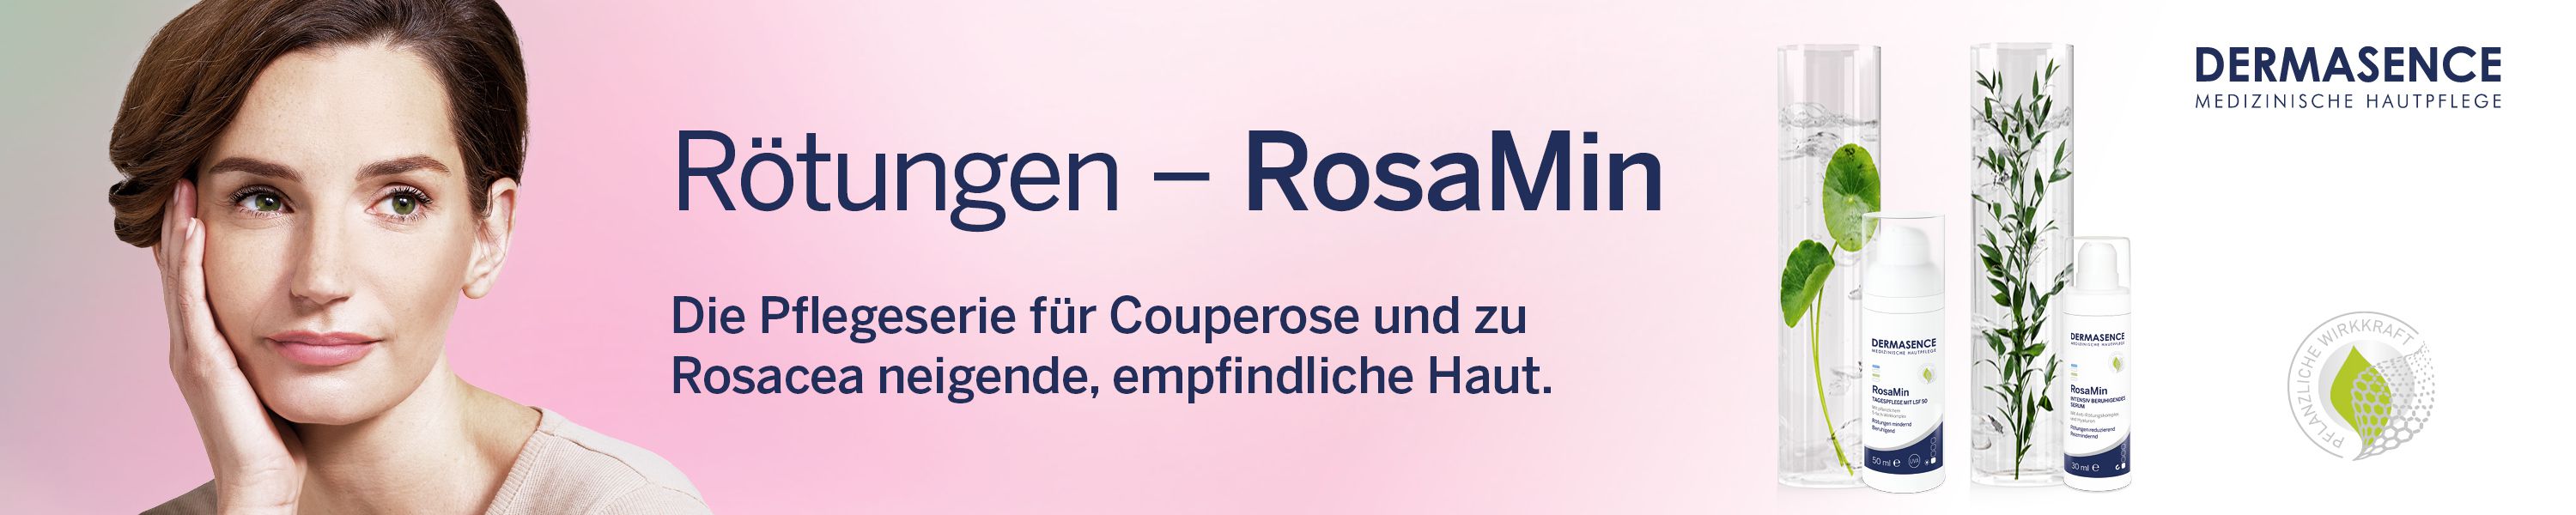 Rosamin - Pflegeserie für Couperose und zu Rosacea neigende, empfindliche Haut